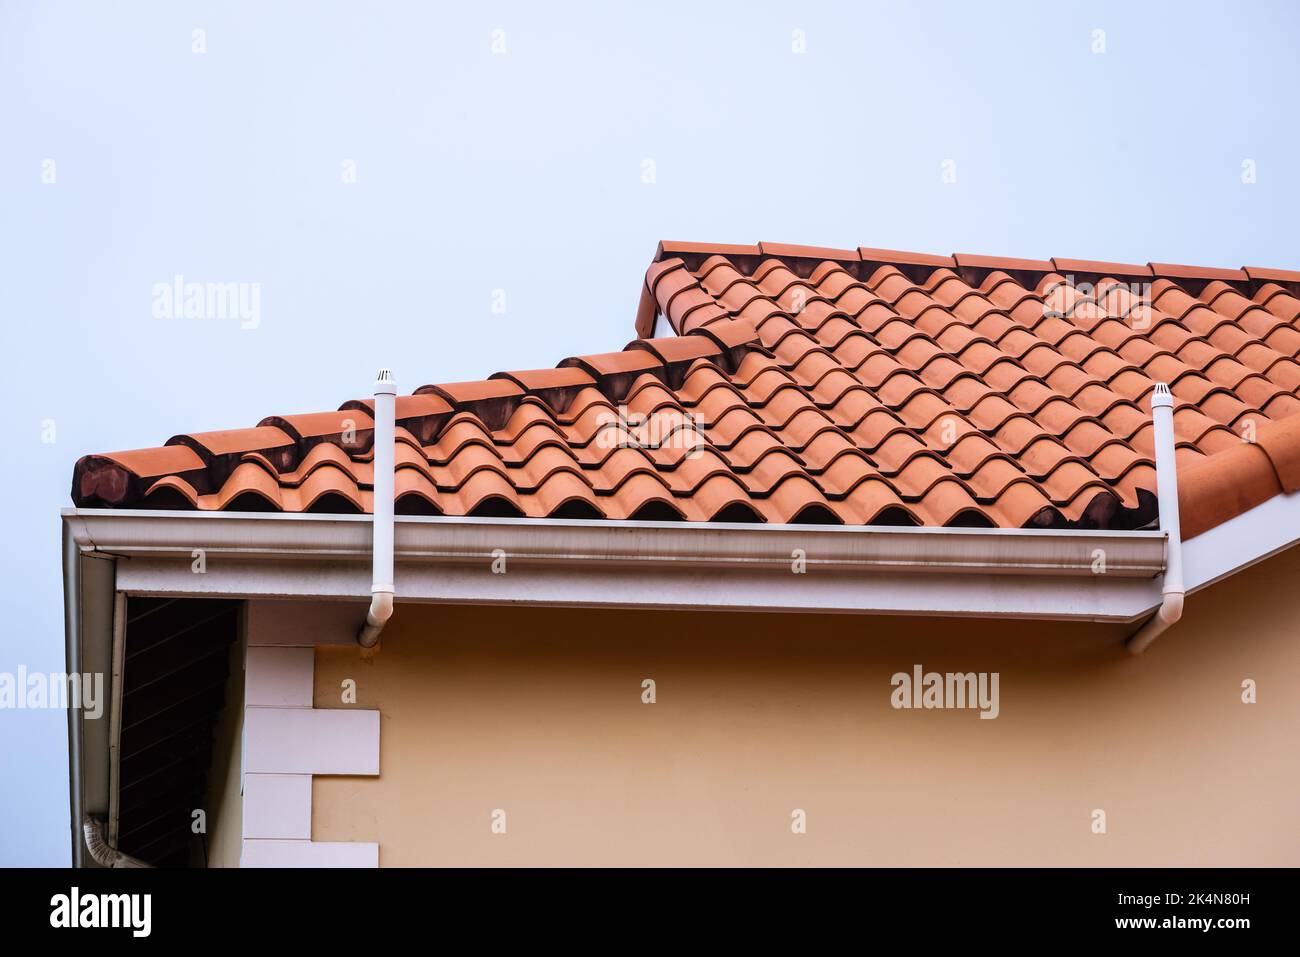 Tegole di terracotta tetto casa tegola rossa tetto e grondaia casa architettura Foto Stock